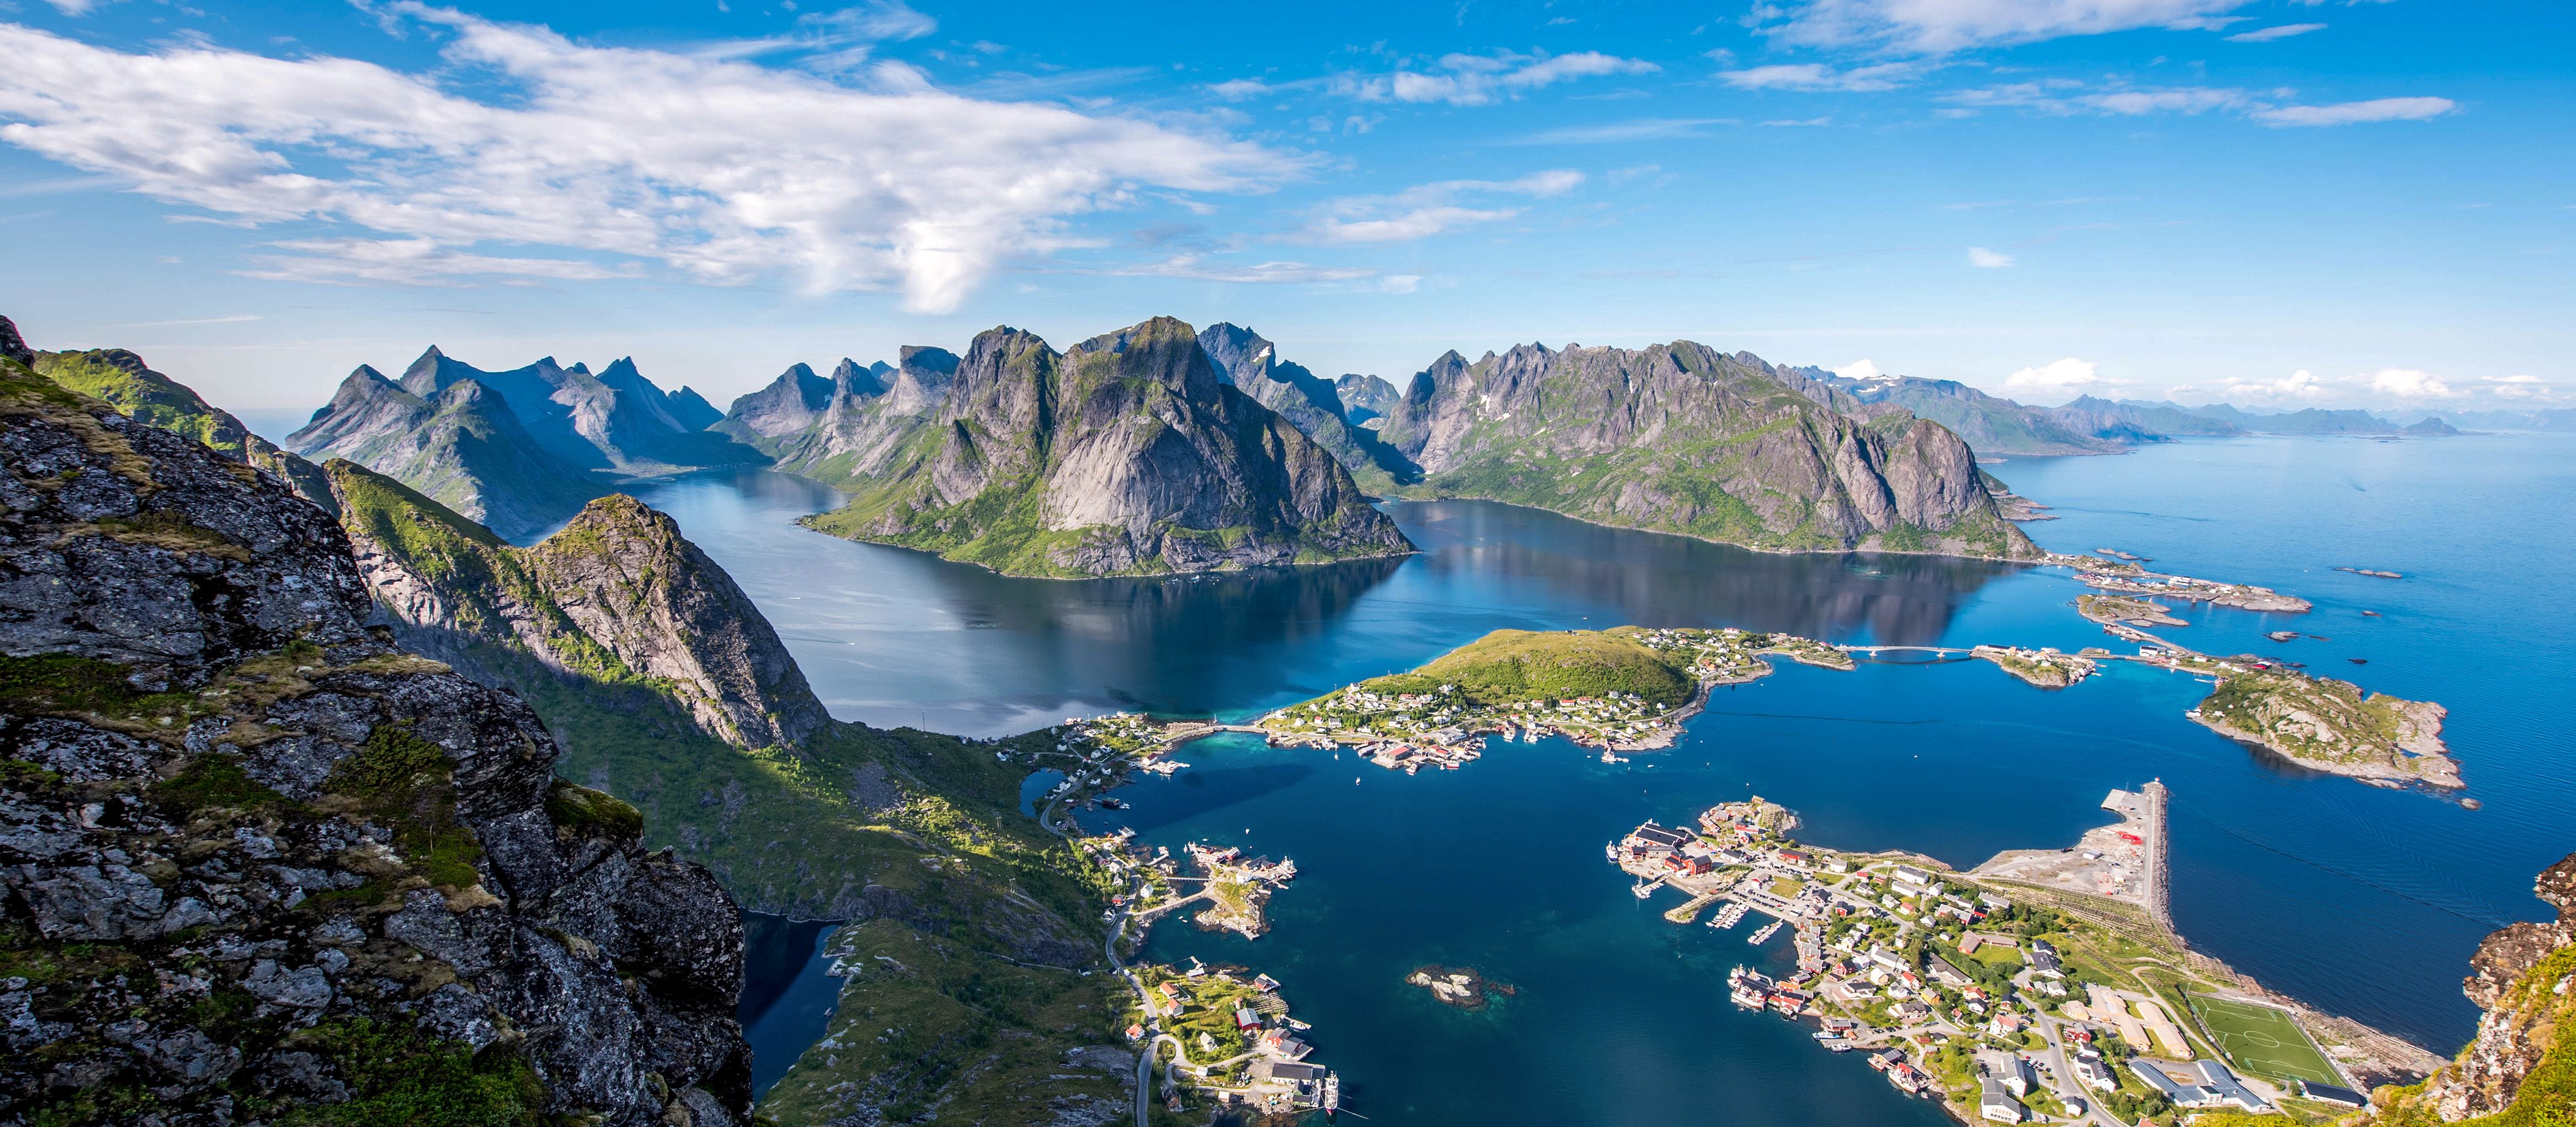 Ausblick vom Gipfel des Reinebringen auf die Inselwelt der Lofoten in Norwegen